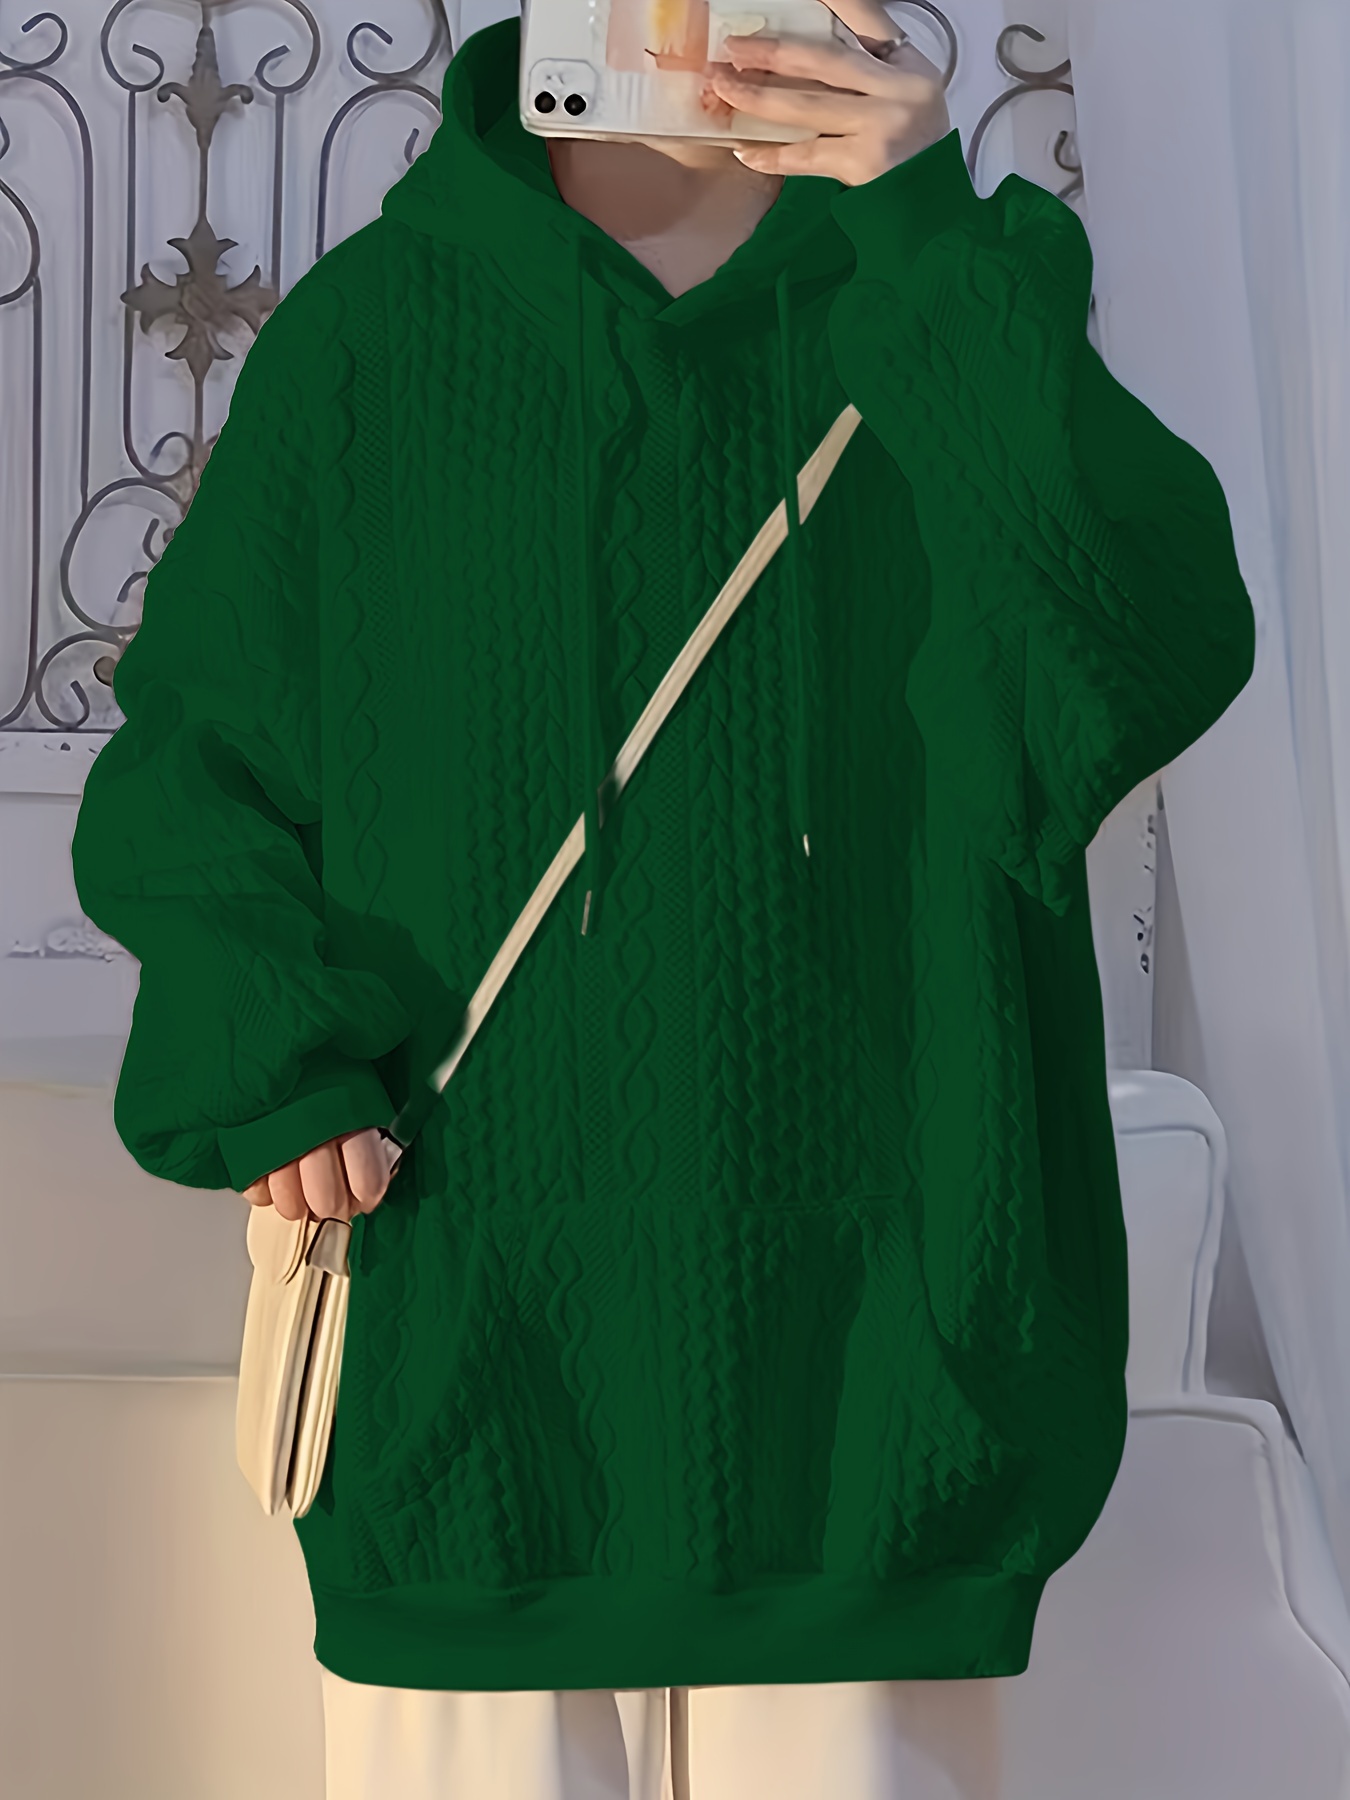 solid textured kangaroo pocket hoodie casual long sleeve drawstring hoodies sweatshirt womens clothing details 6